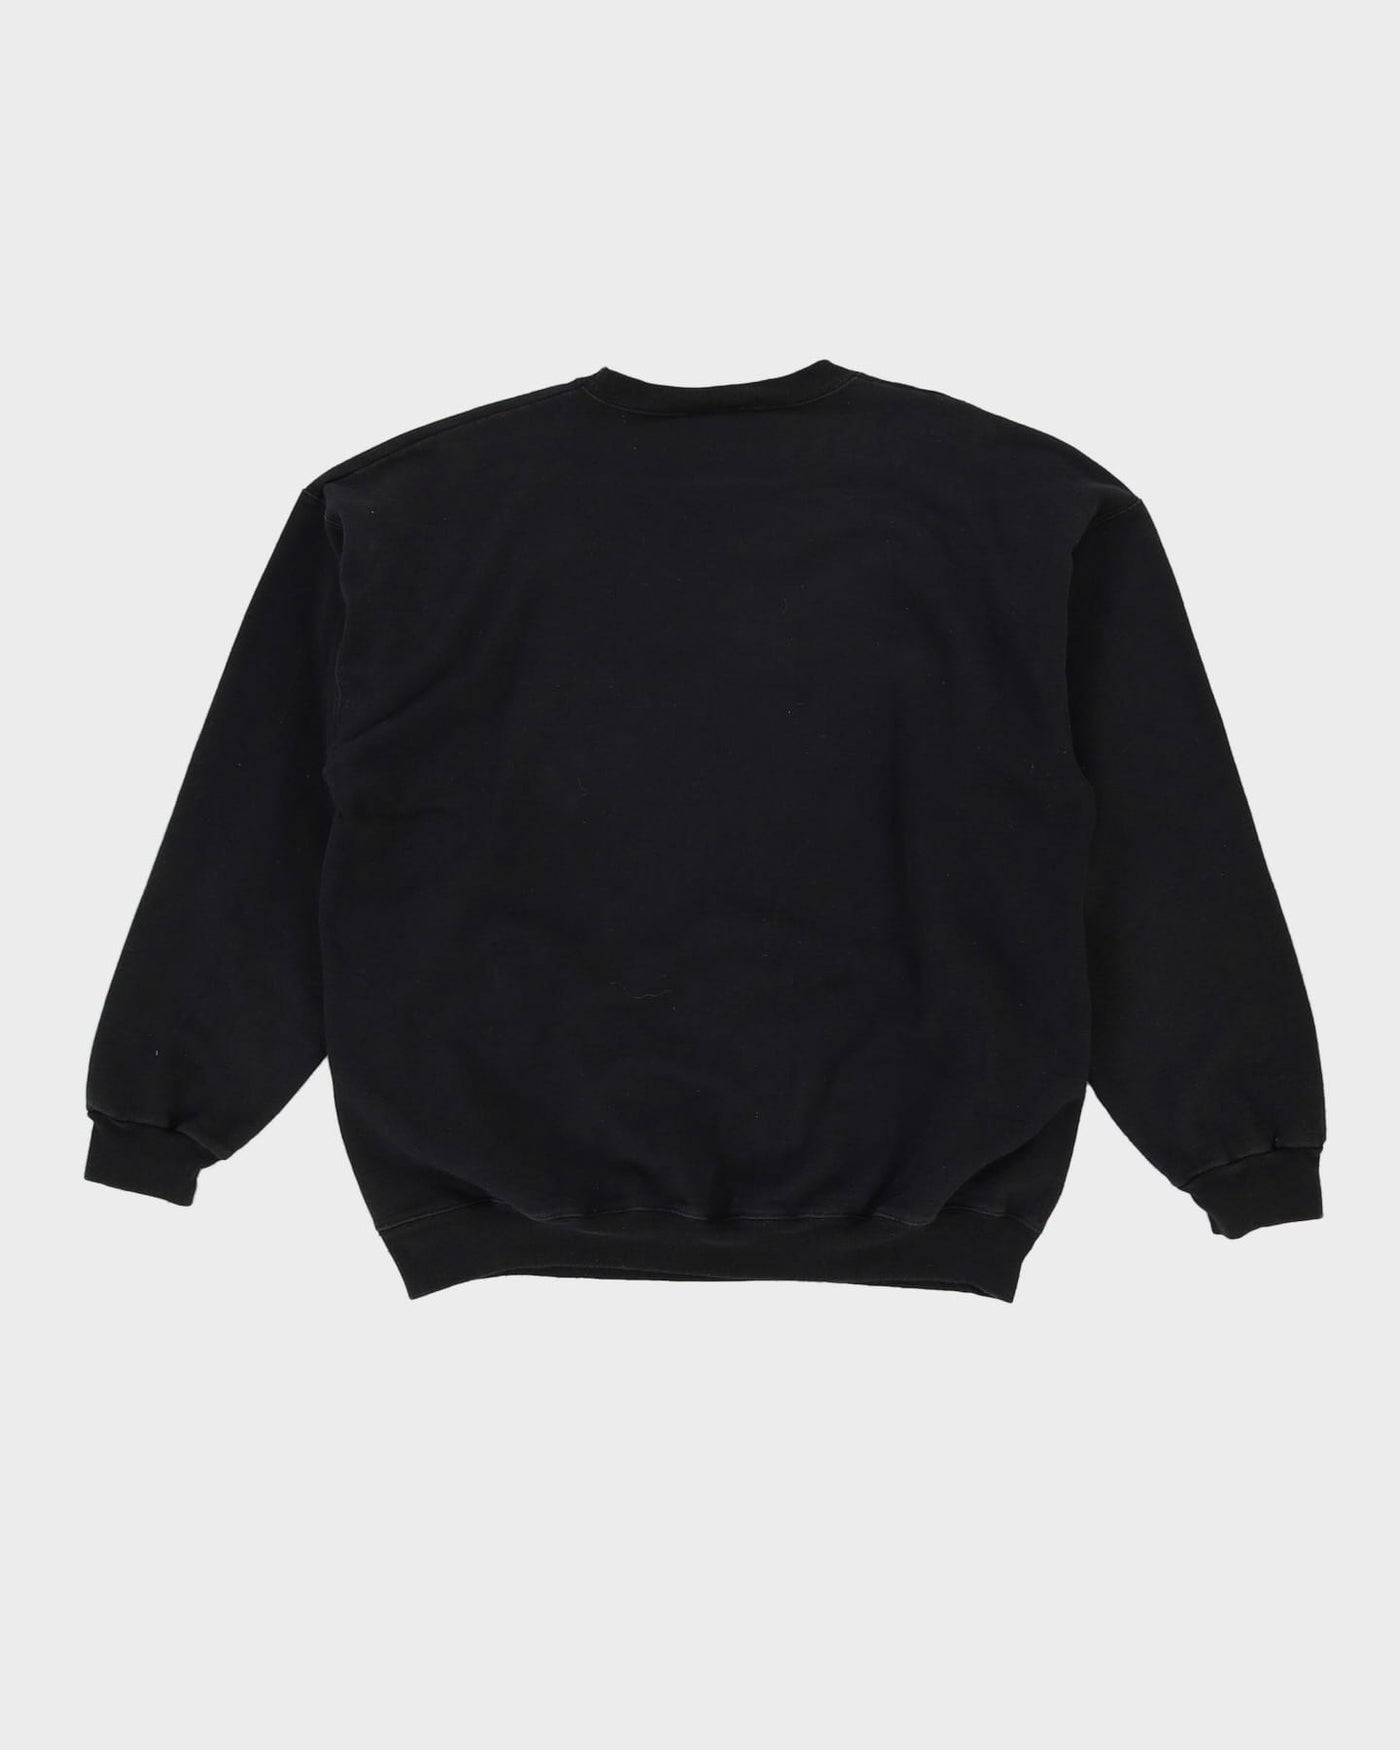 Eazy E Thrasher Black Graphic Sweatshirt - XL